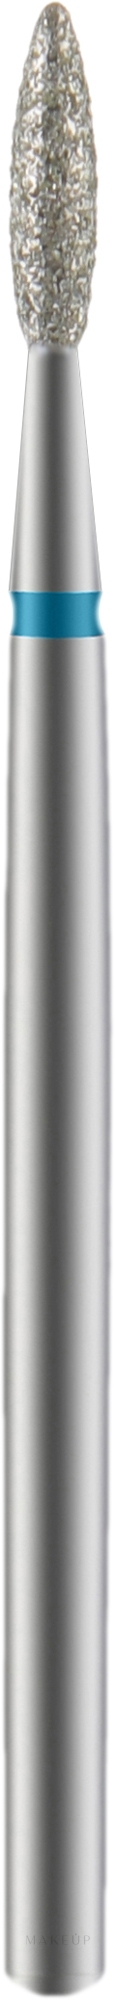 Diamantfräser Flame scharf blau Durchmesser 2,1 mm Arbeitsteil 8 mm - Staleks Pro — Bild 1 St.